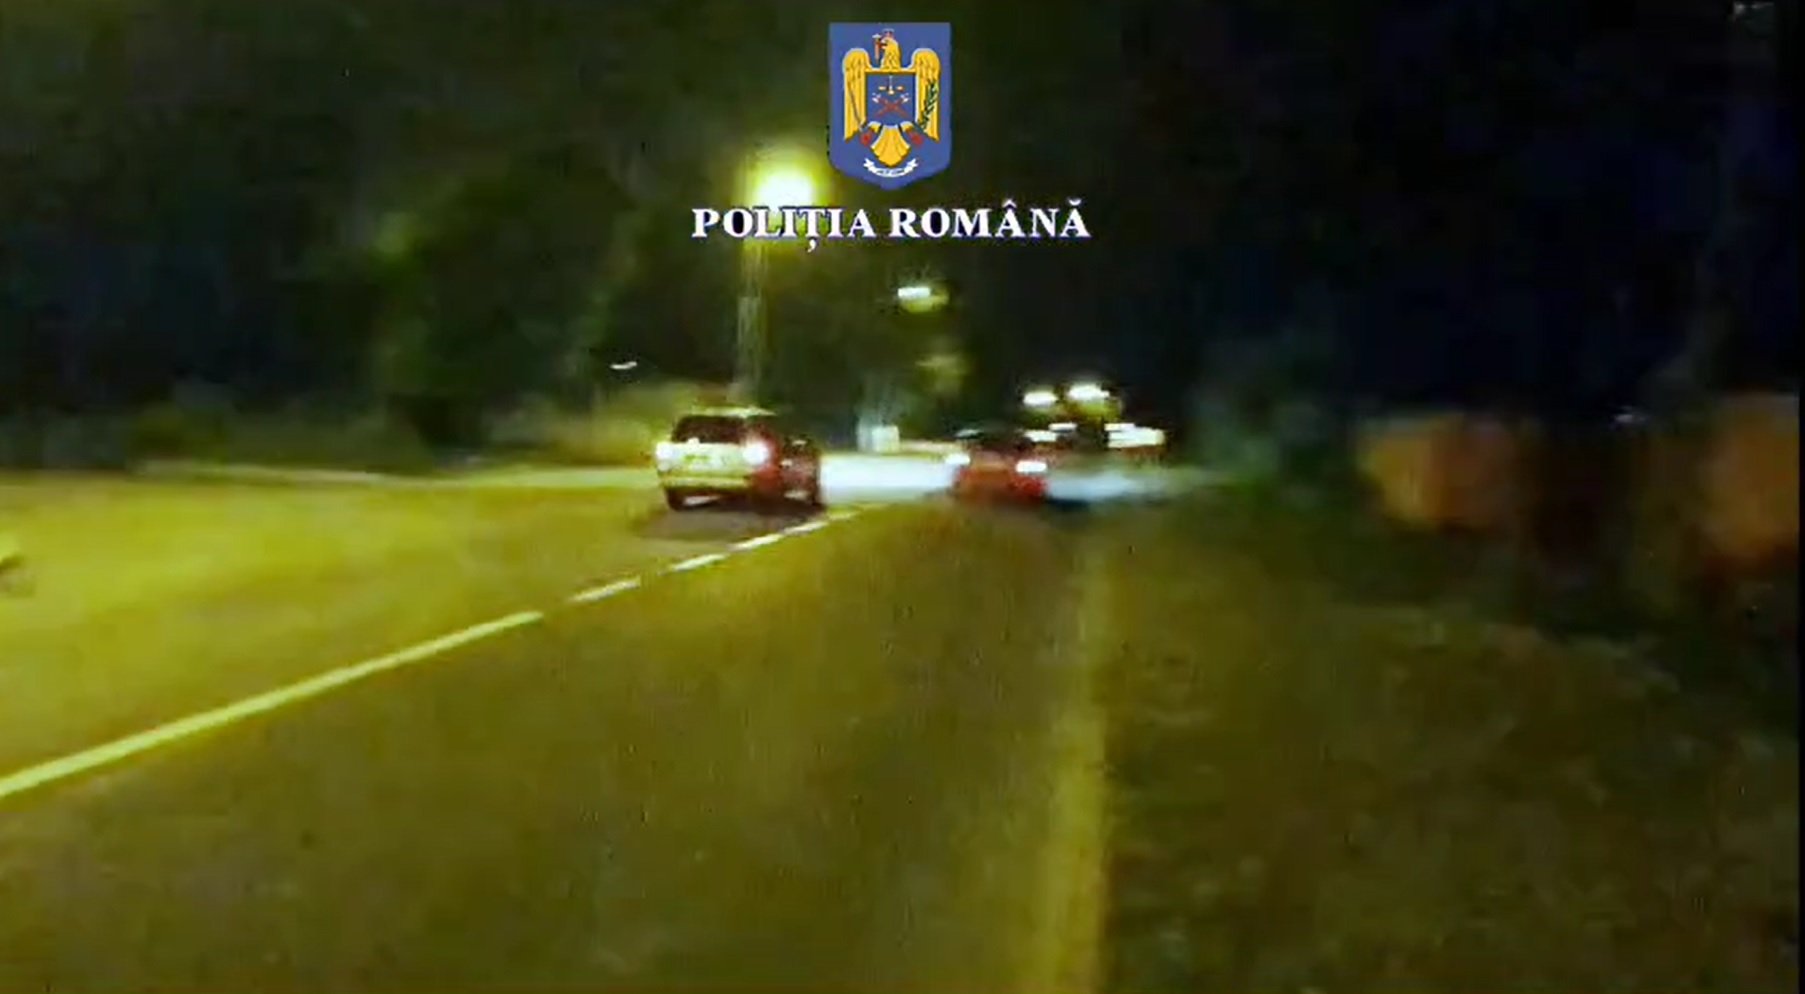  VIDEO Cursă ilegală de mașini terminată cu accident în Făgăraș. Tinerii blocaseră o stradă special pentru întrecere